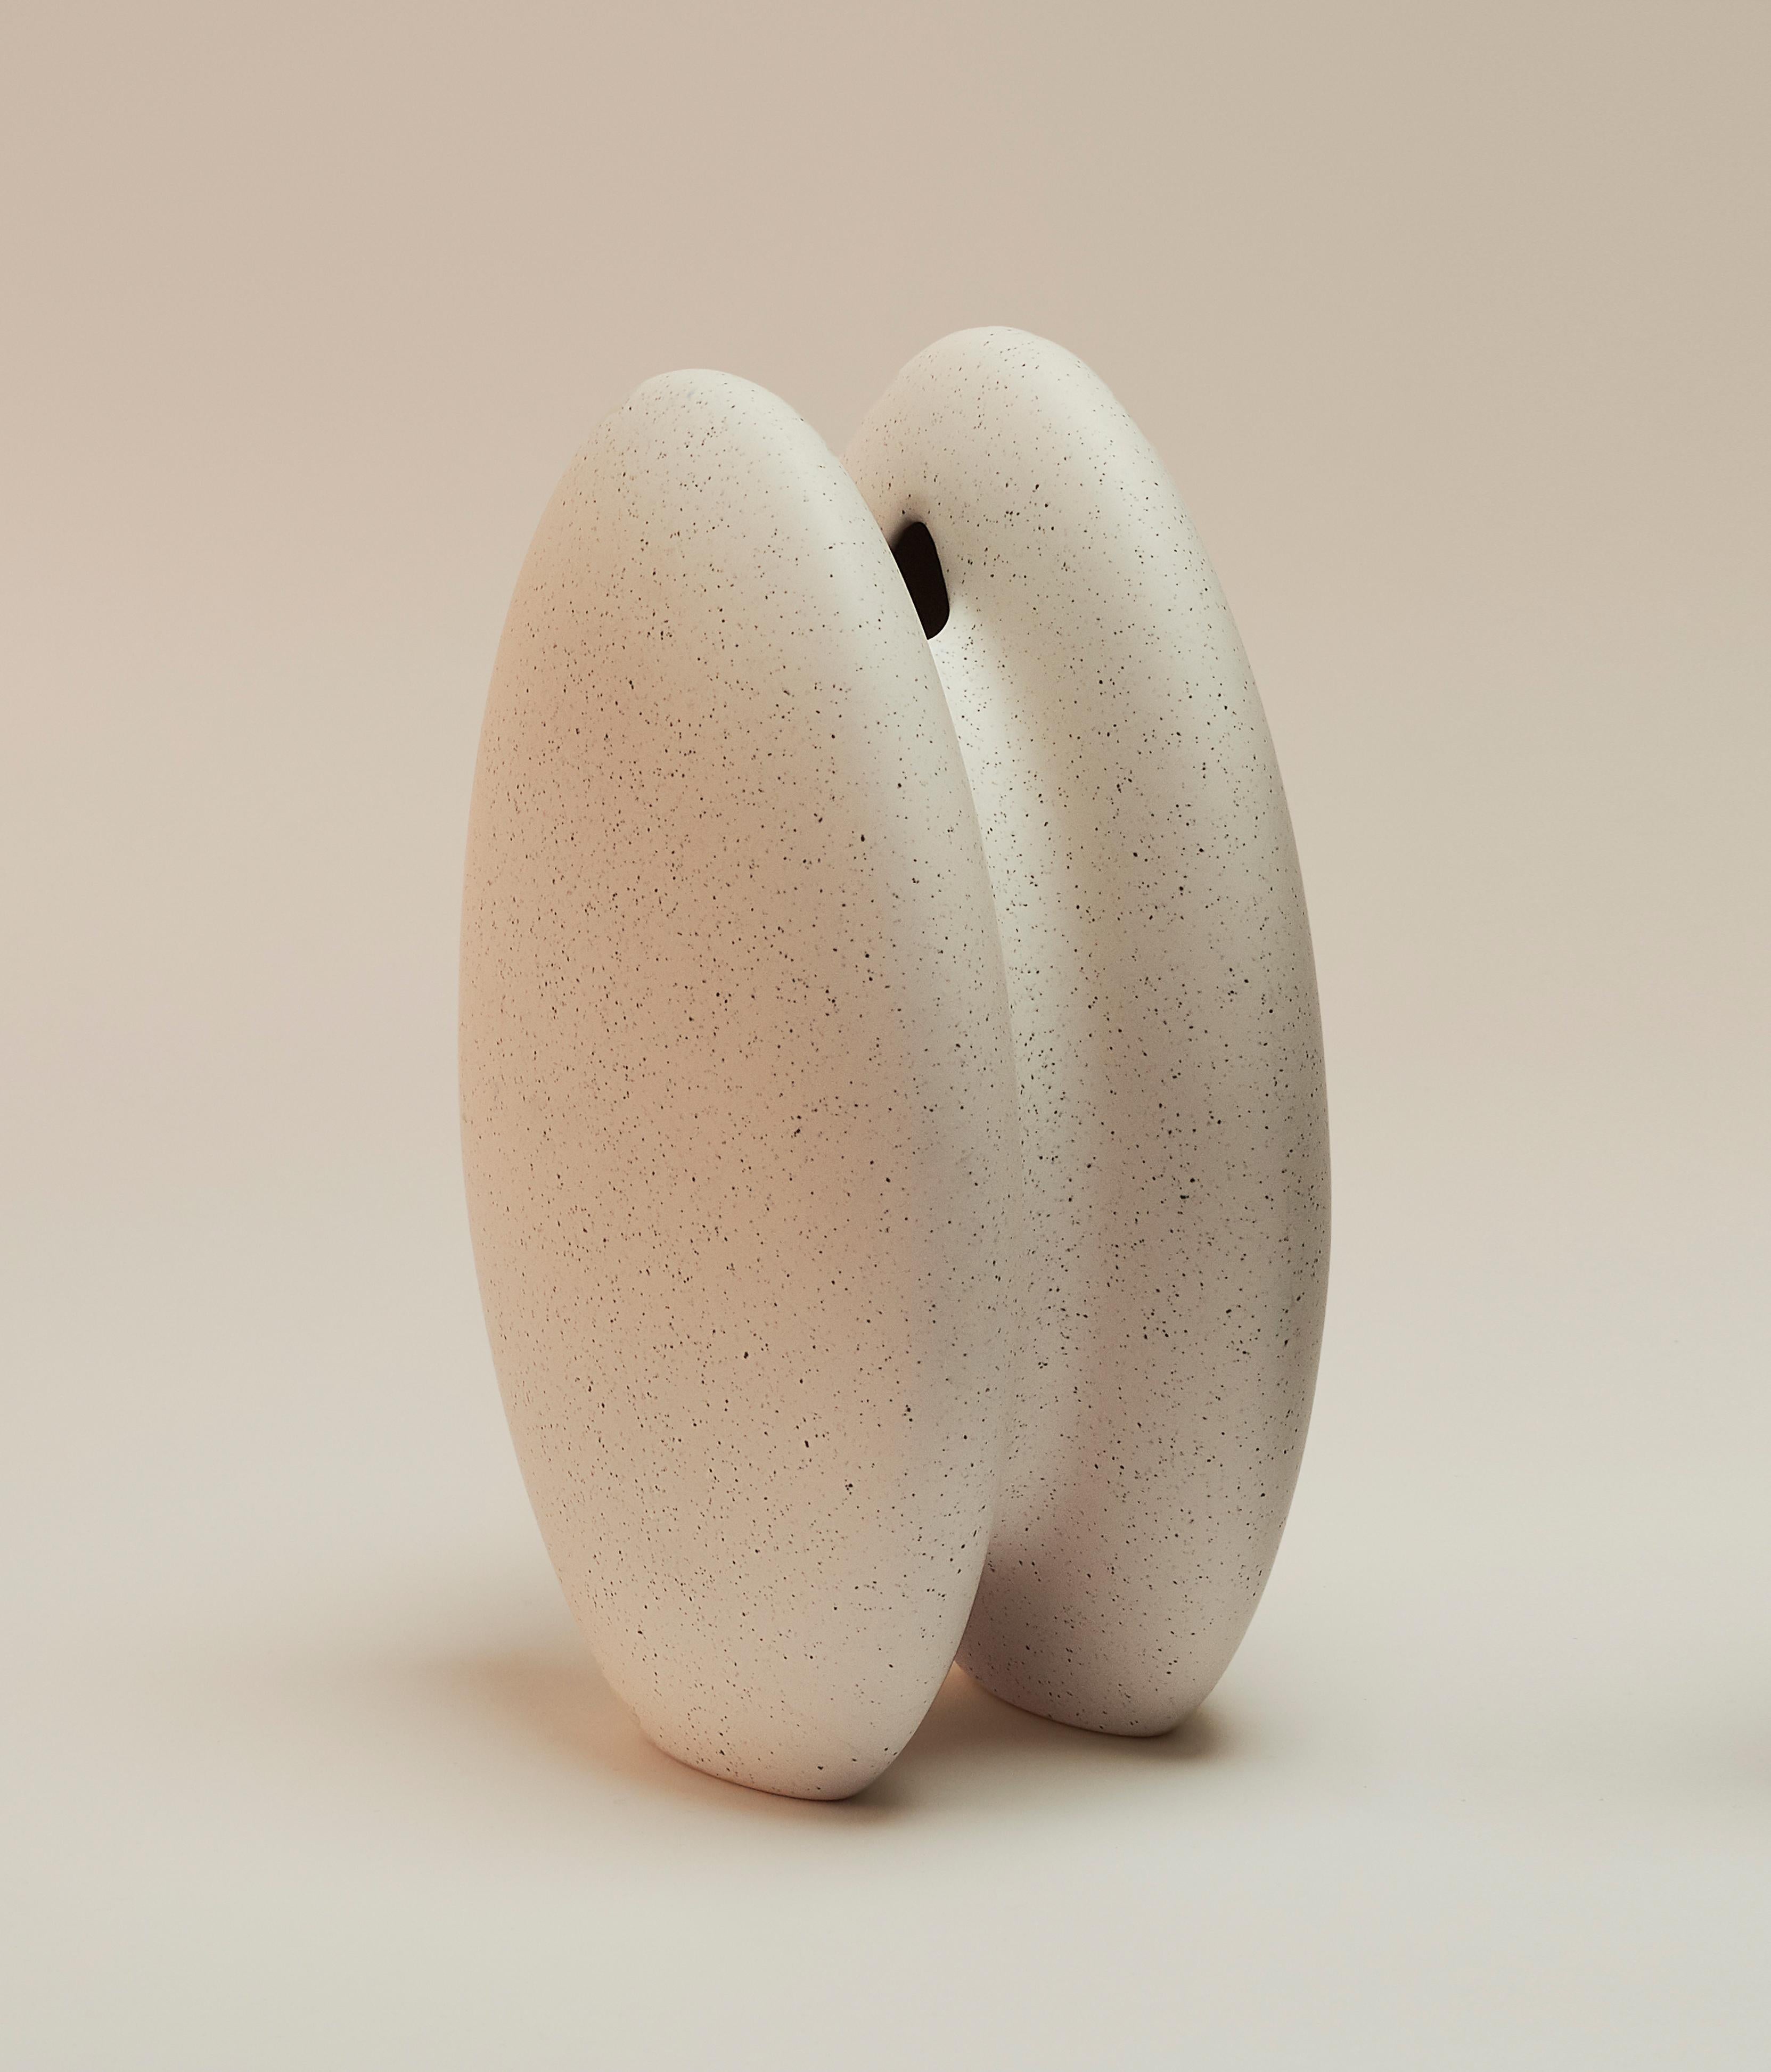 Vase Simiente von Lilia Cruz Corona Garduño
Abmessungen: B 11 x T 17 x H 25 cm
MATERIALIEN: Hochtemperatur-Keramik (Steinzeug) und keramische Glasur

Das Studio Platalea ist aus einer Leidenschaft für Kunst und Design entstanden. Wir finden es toll,